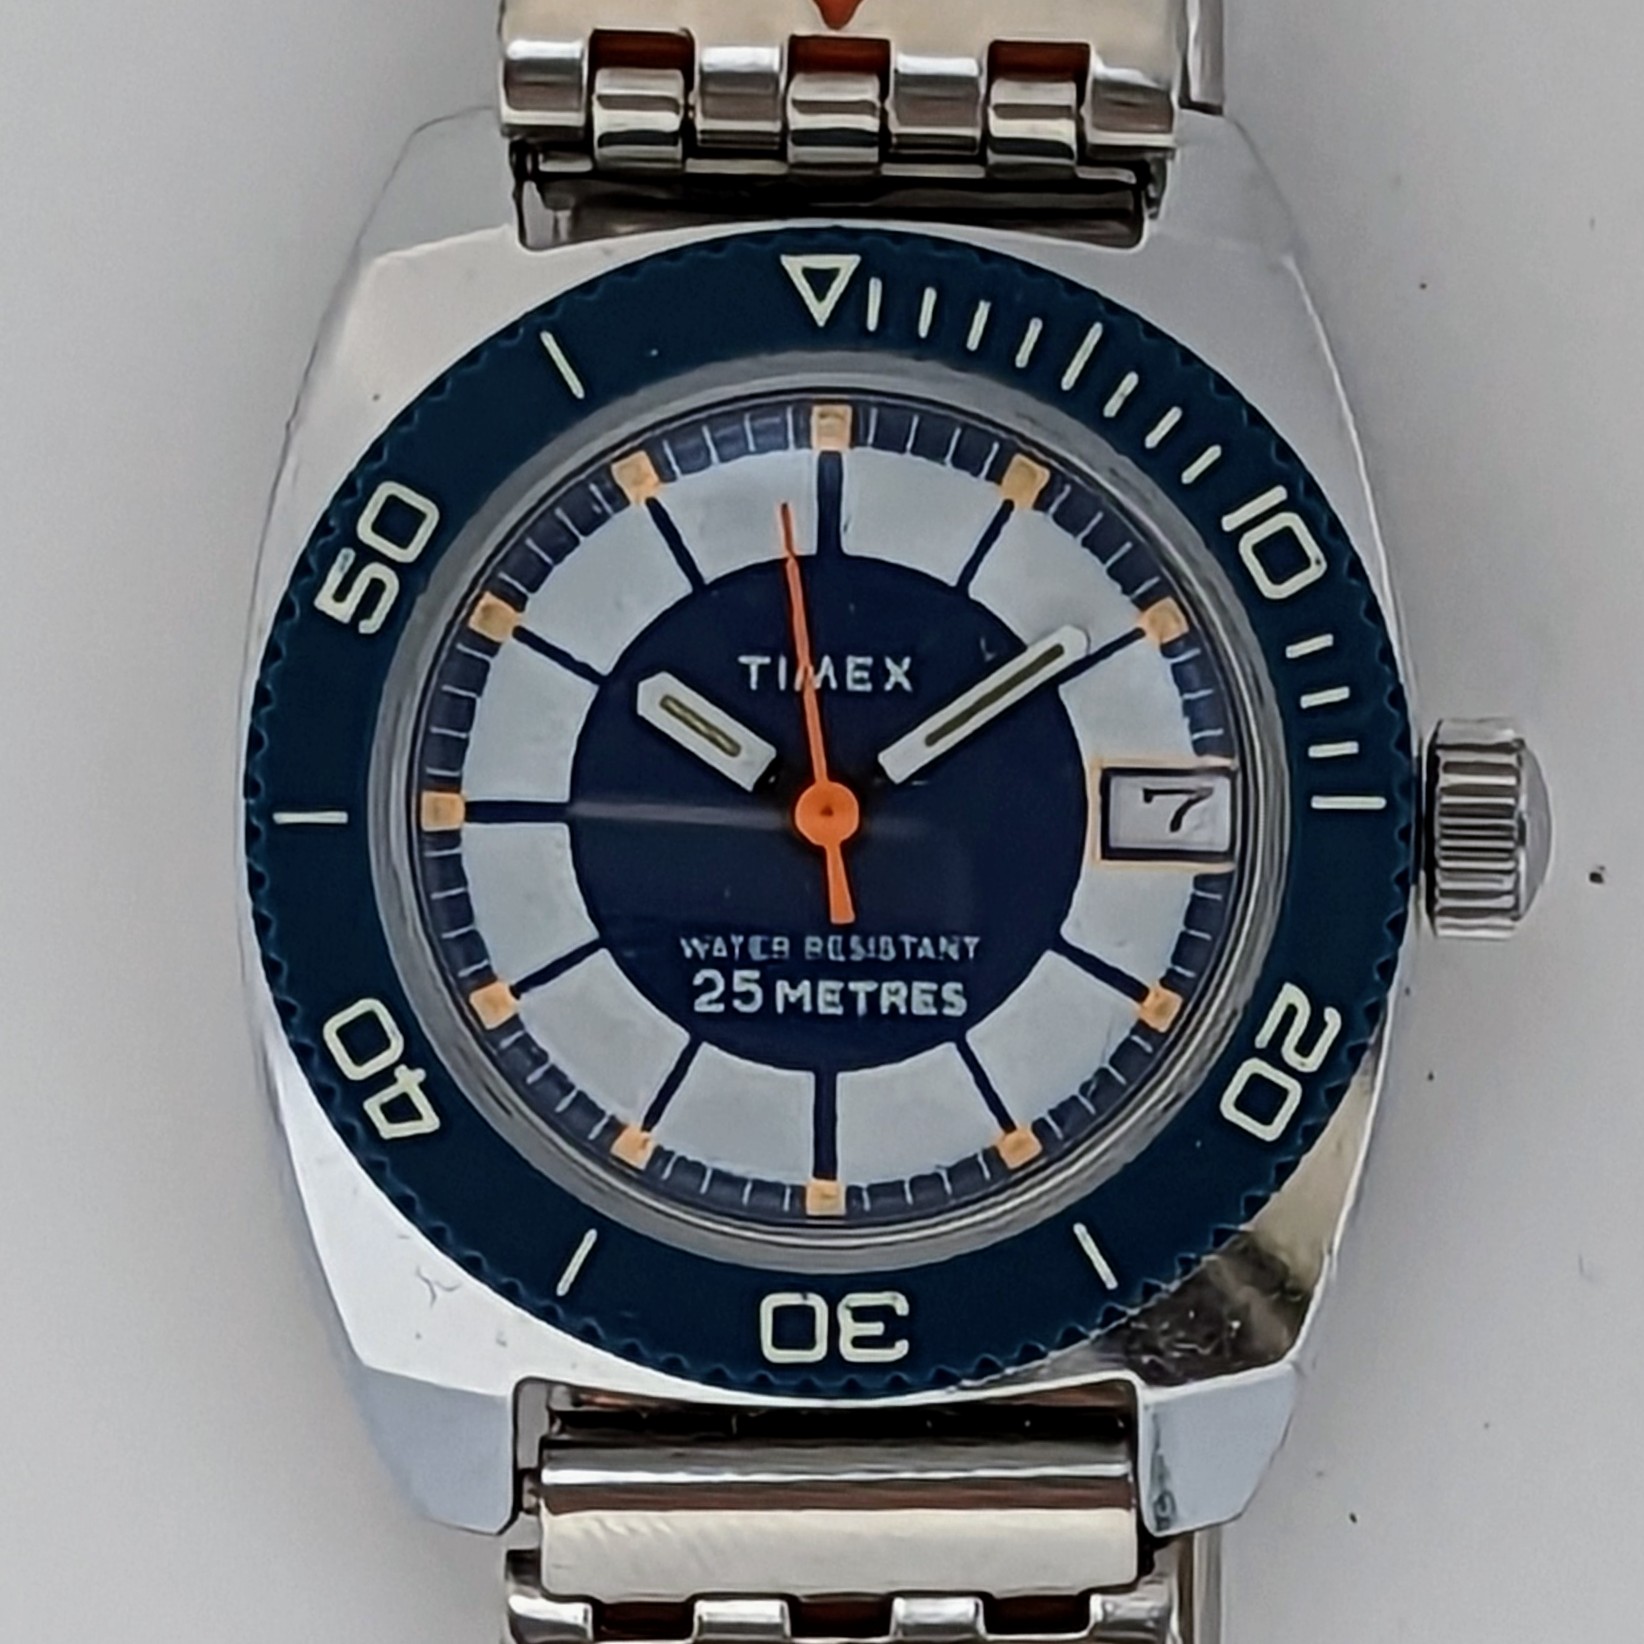 Timex Sprite 2291 02579 [1979] Dive Watch